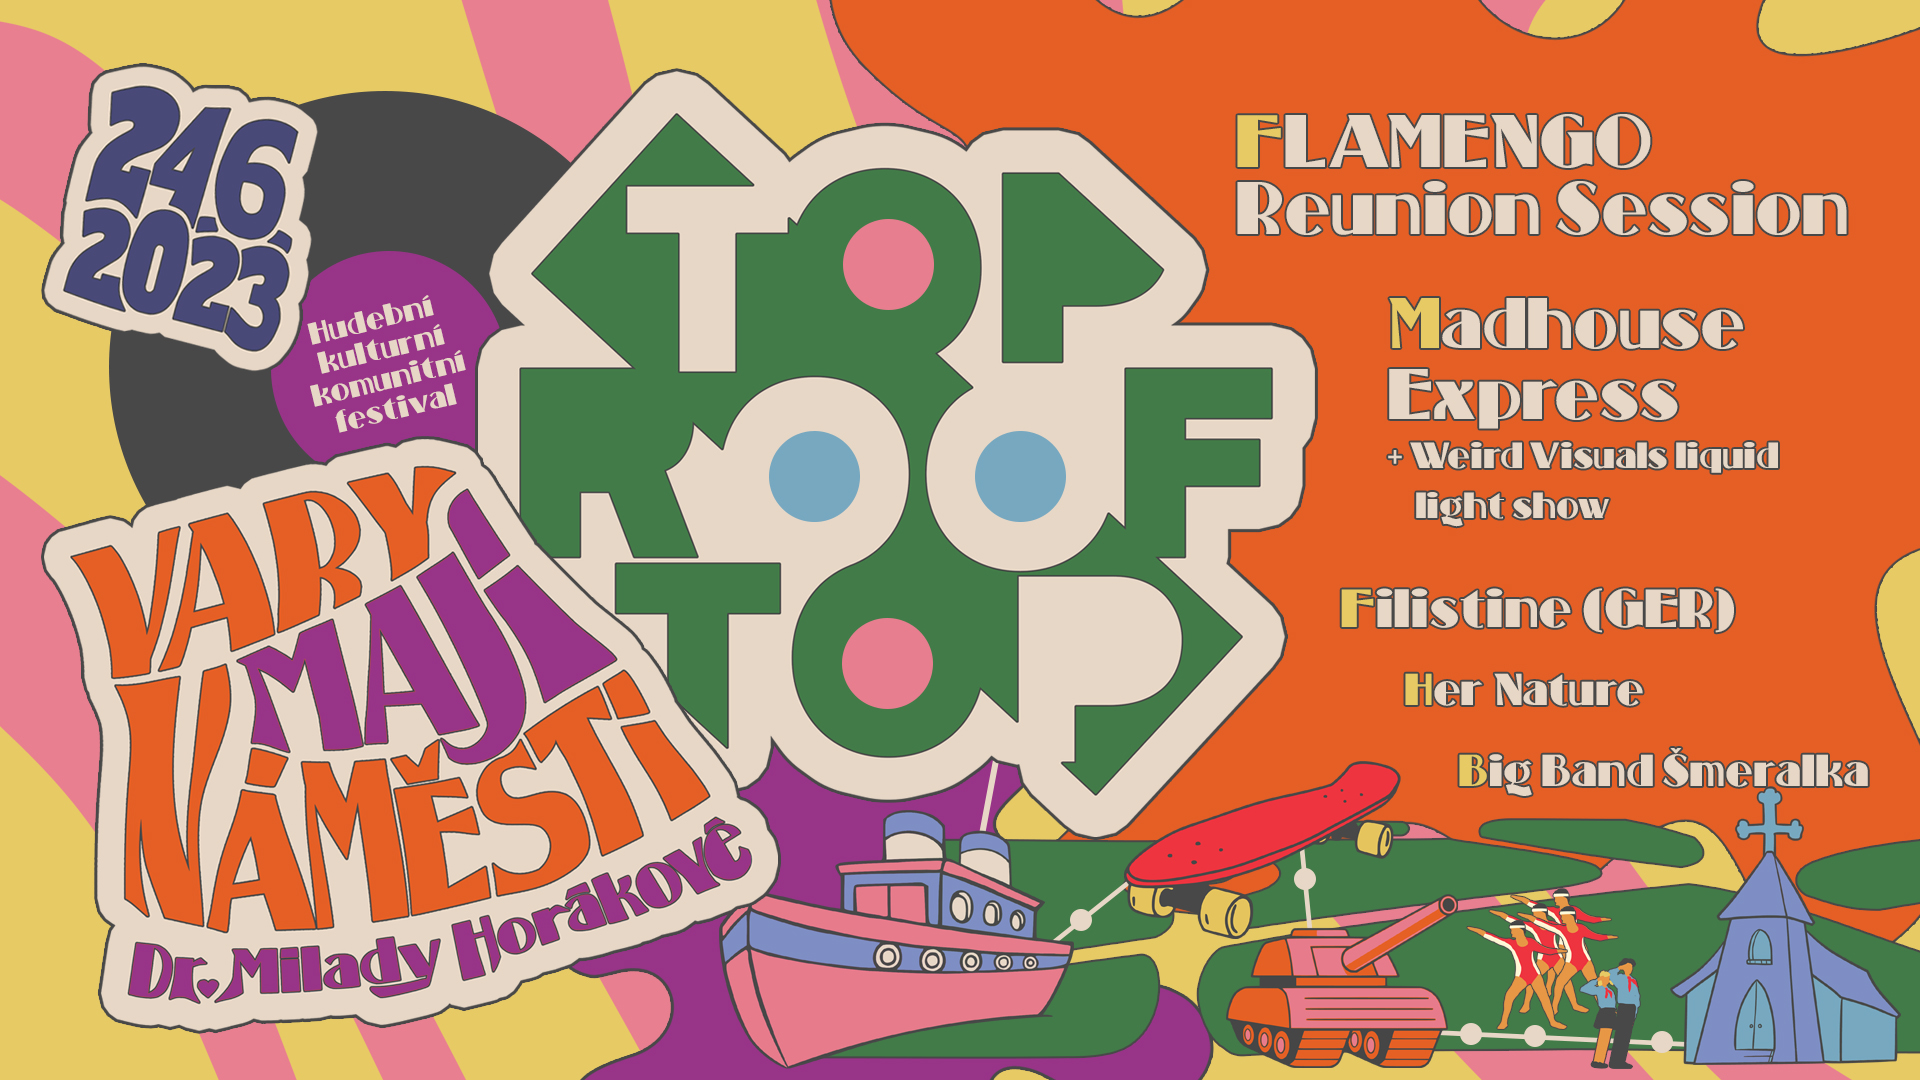 'Vary mají náměstí' hlásá 8. ročník hudebního festivalu Top RoofTop a přiváží Flamengo Reunion Session nebo Madhouse Express